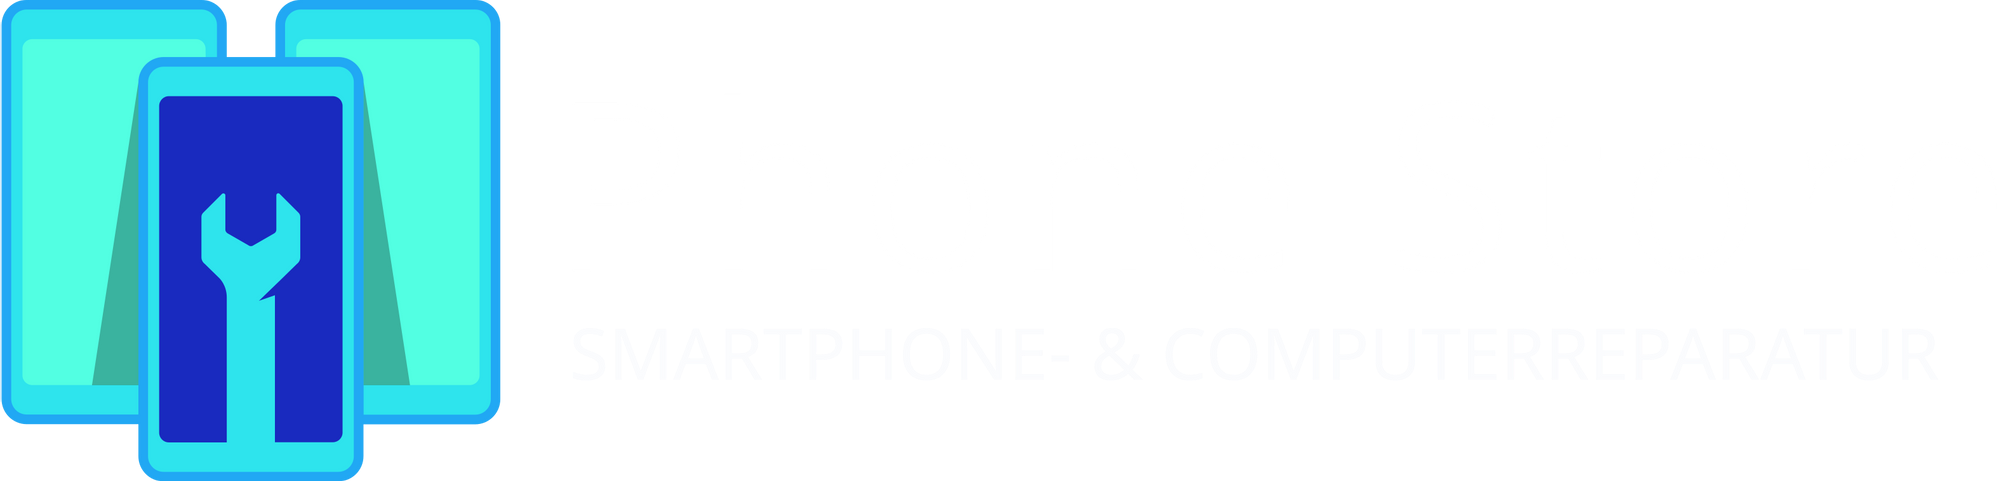 PHONE STORE